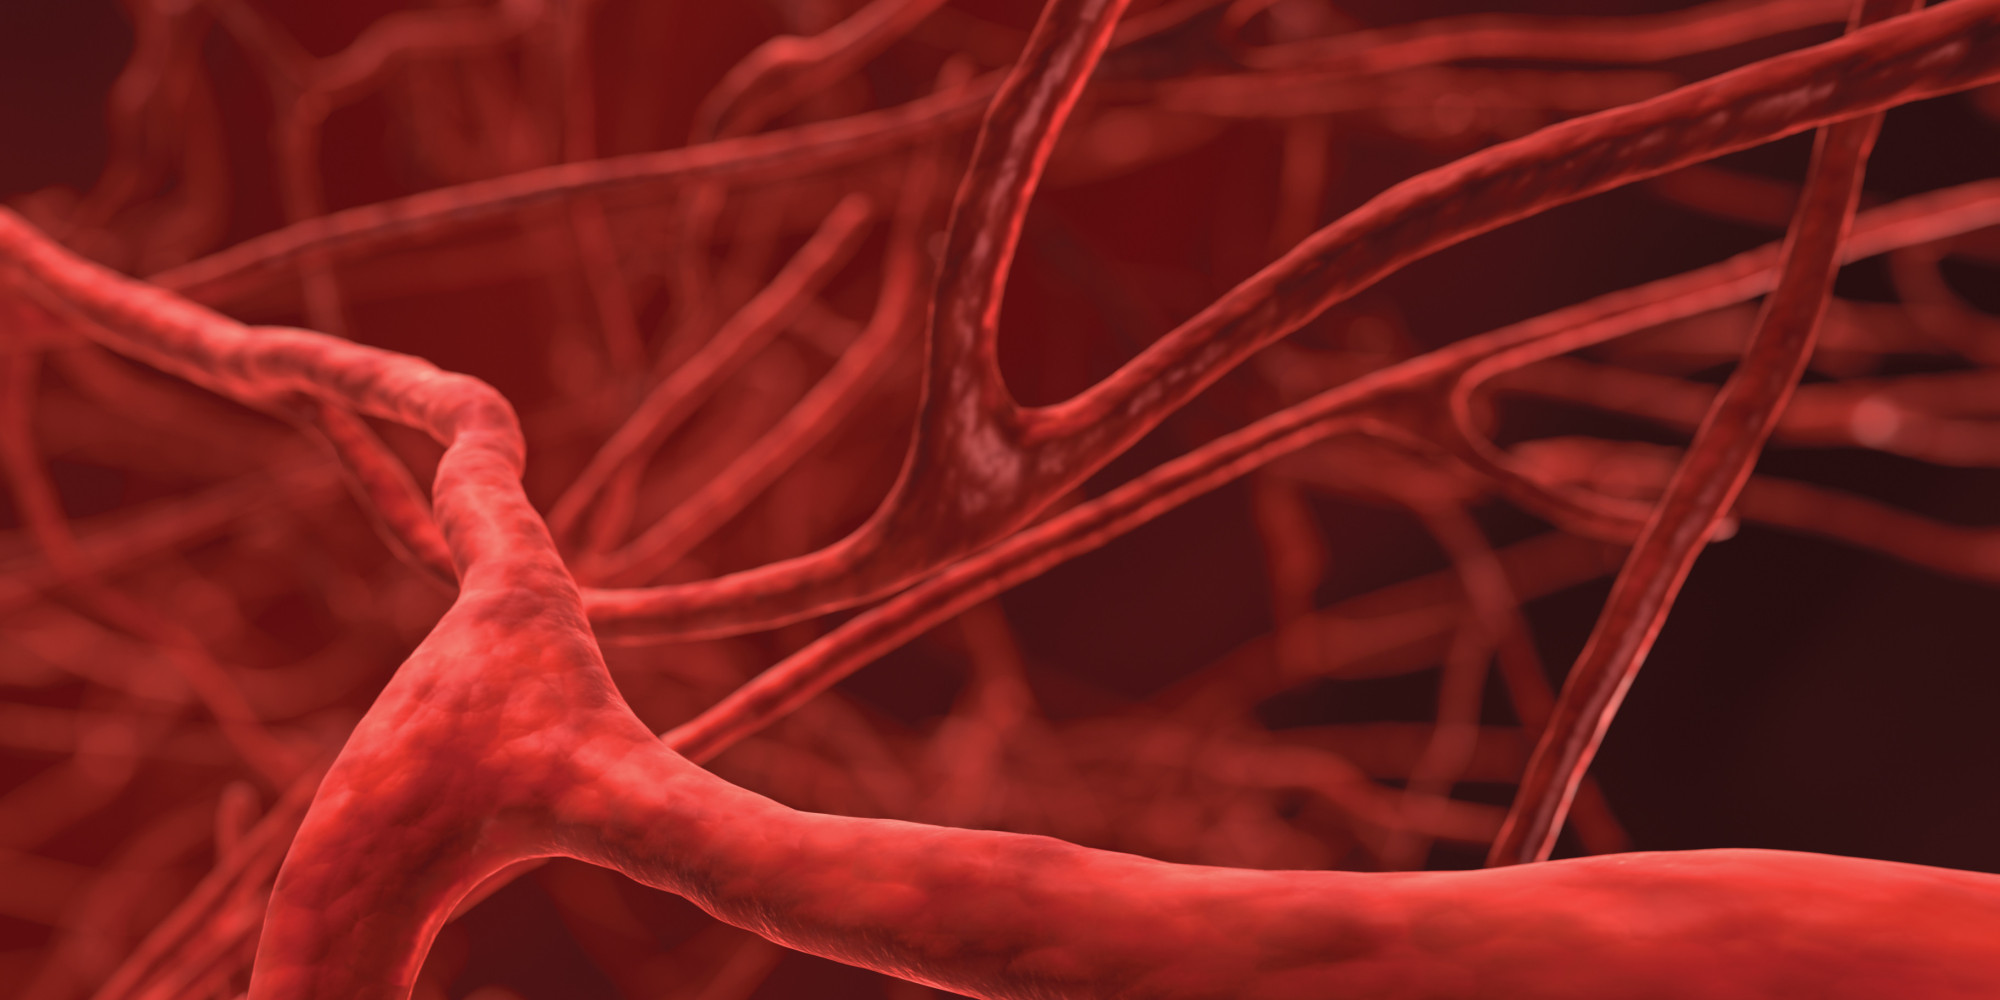 Blodkärl - nitratrika rödbetor kan öka viktig kväveoxidbildning.